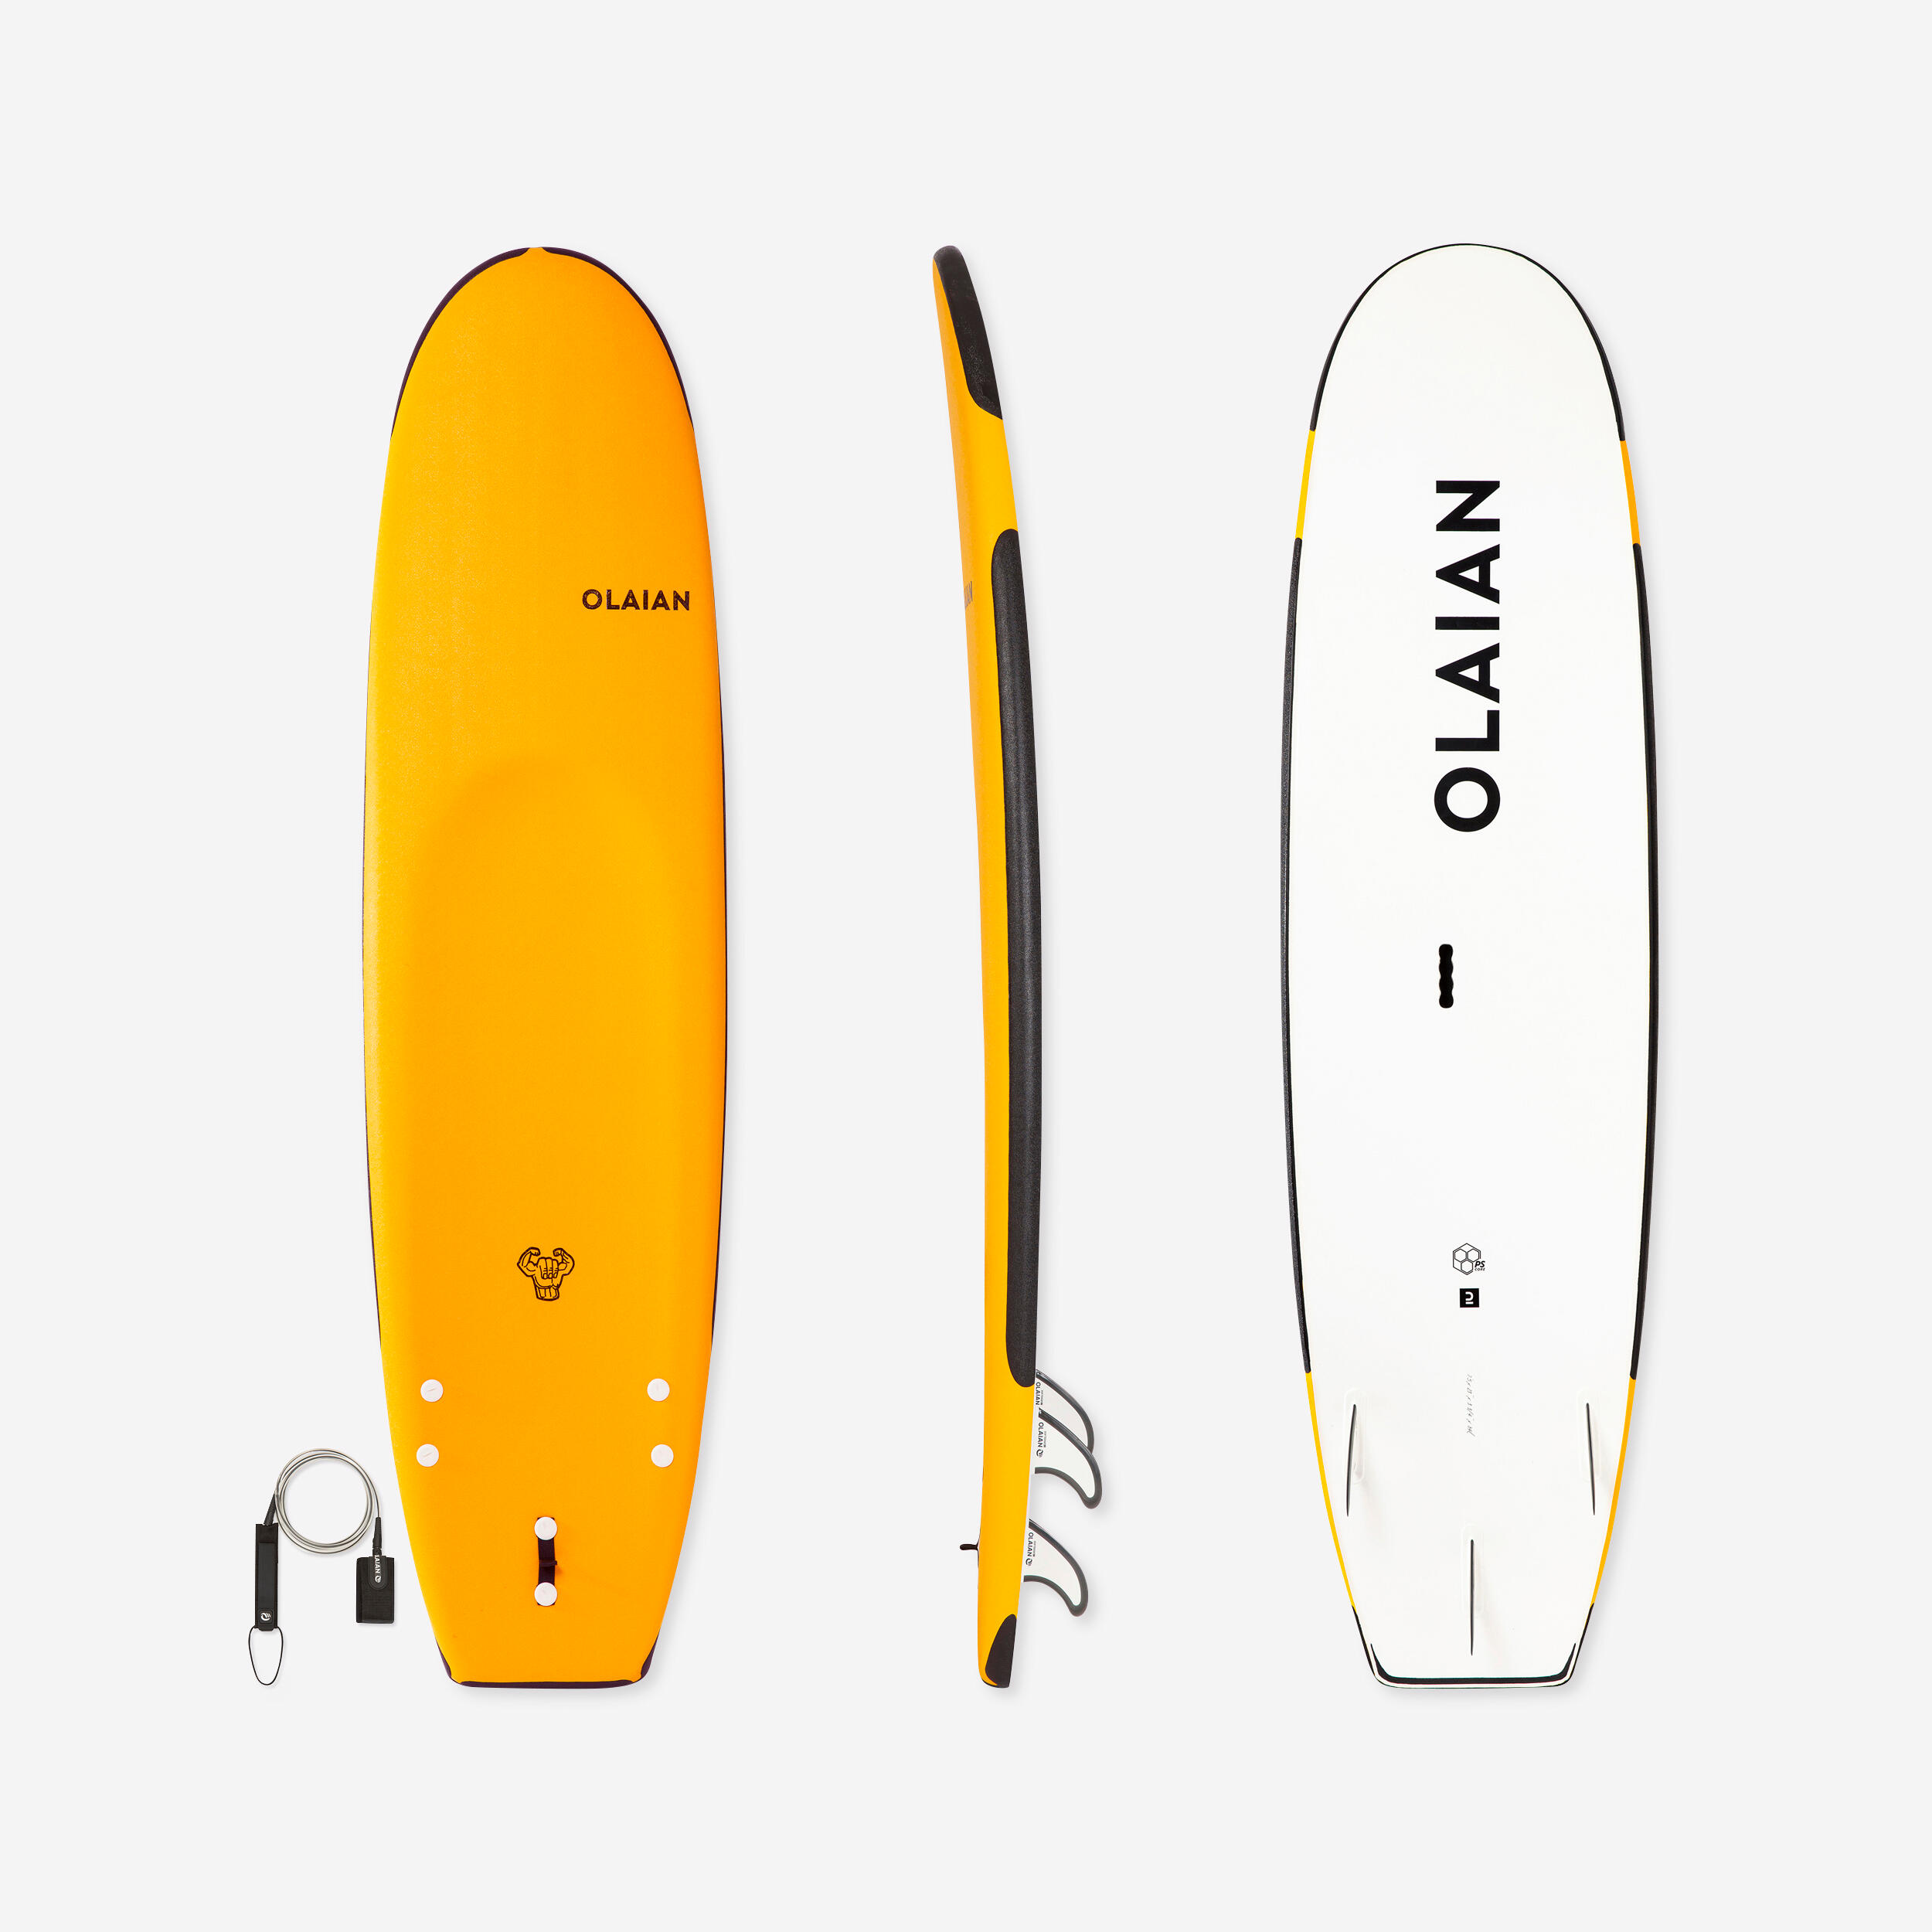 OLAIAN FOAM SURFBOARD 100 Reinforced 7'5" 80 L + Leash